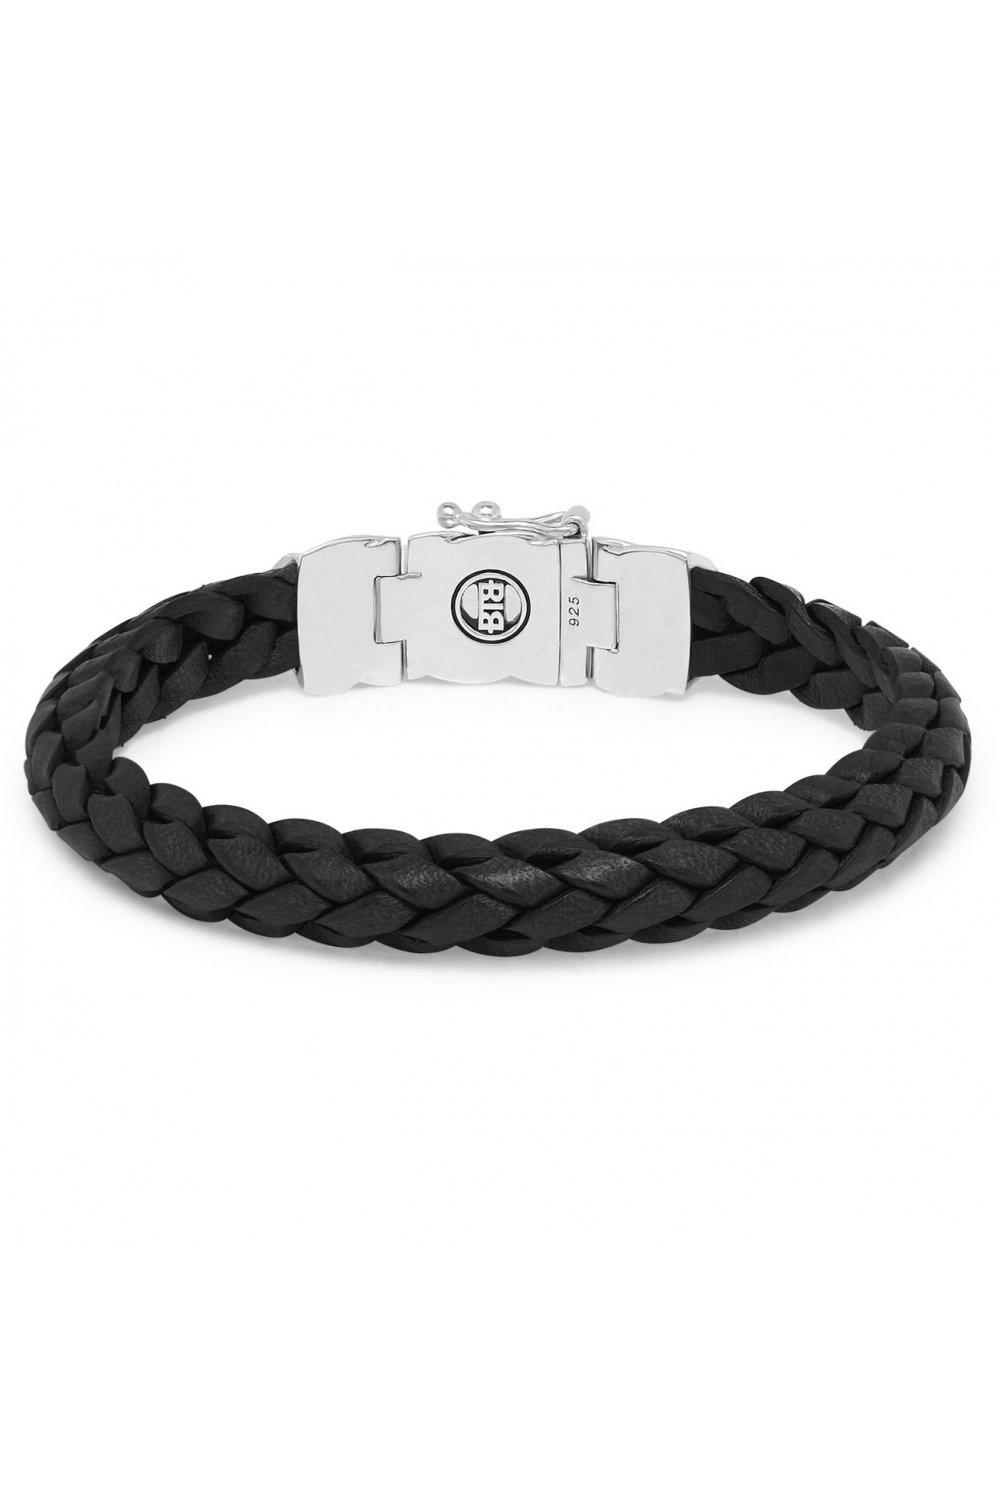 mangky sterling silver fashion bracelet - 001j051260307